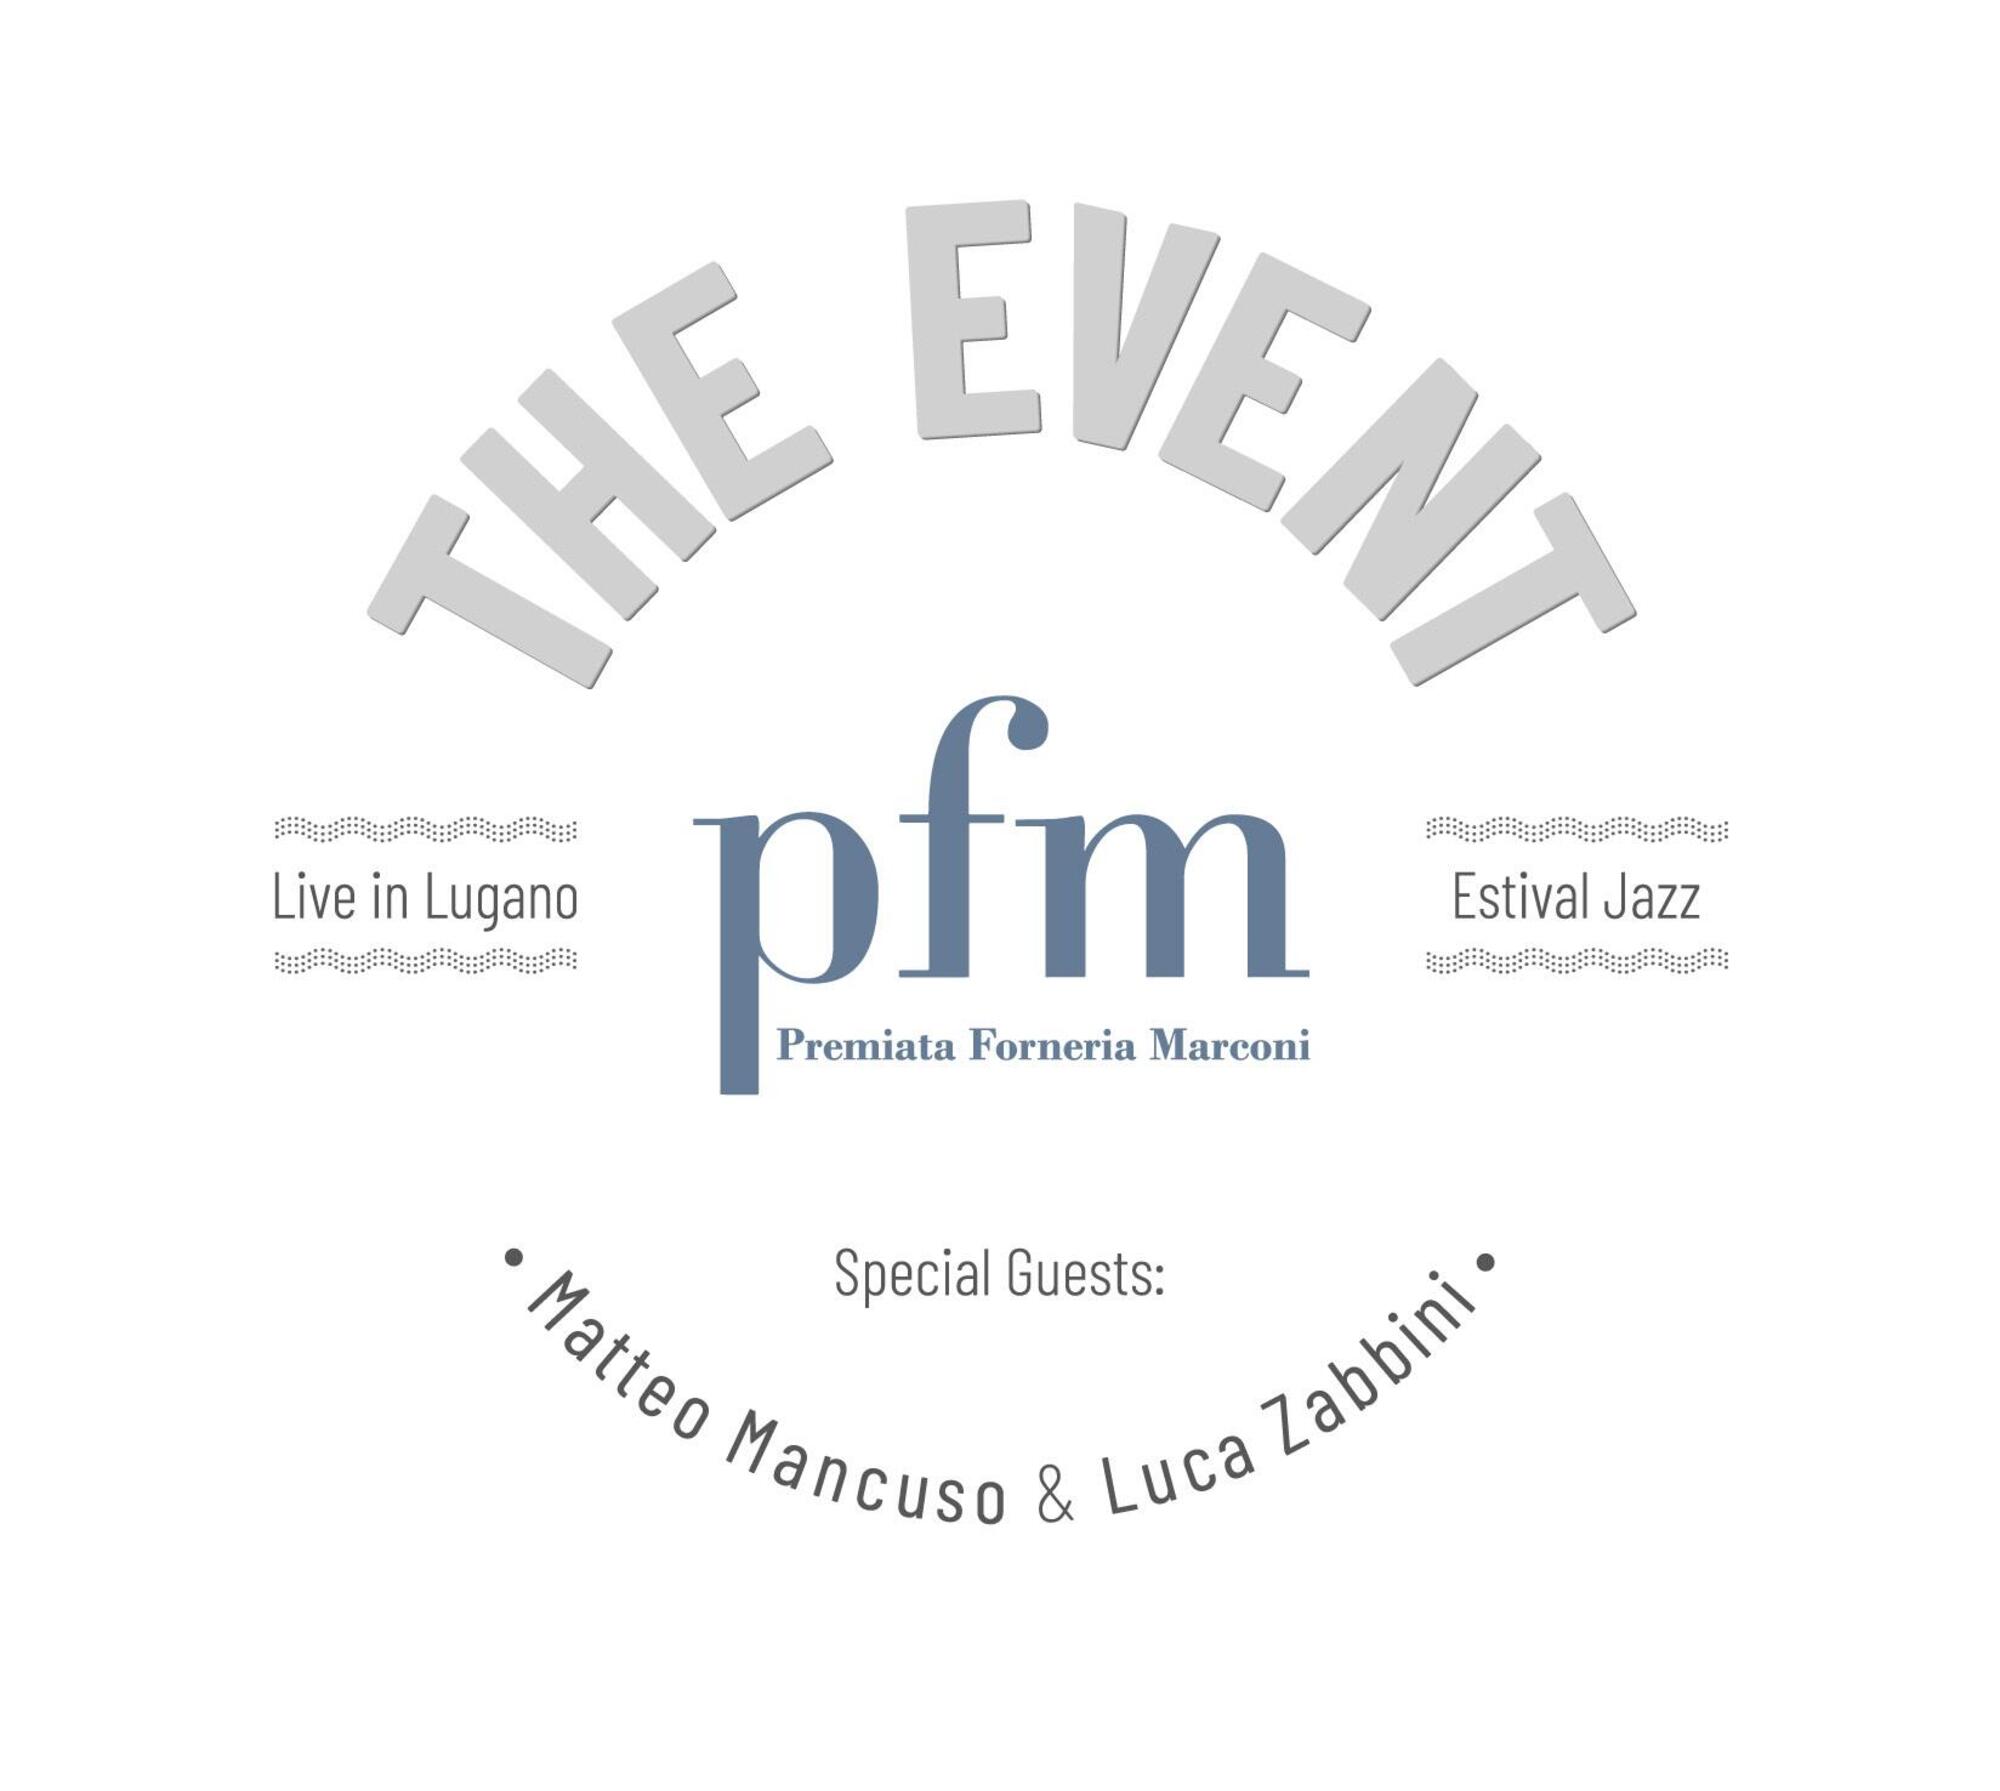 The Event- Live in Lugano della Pfm